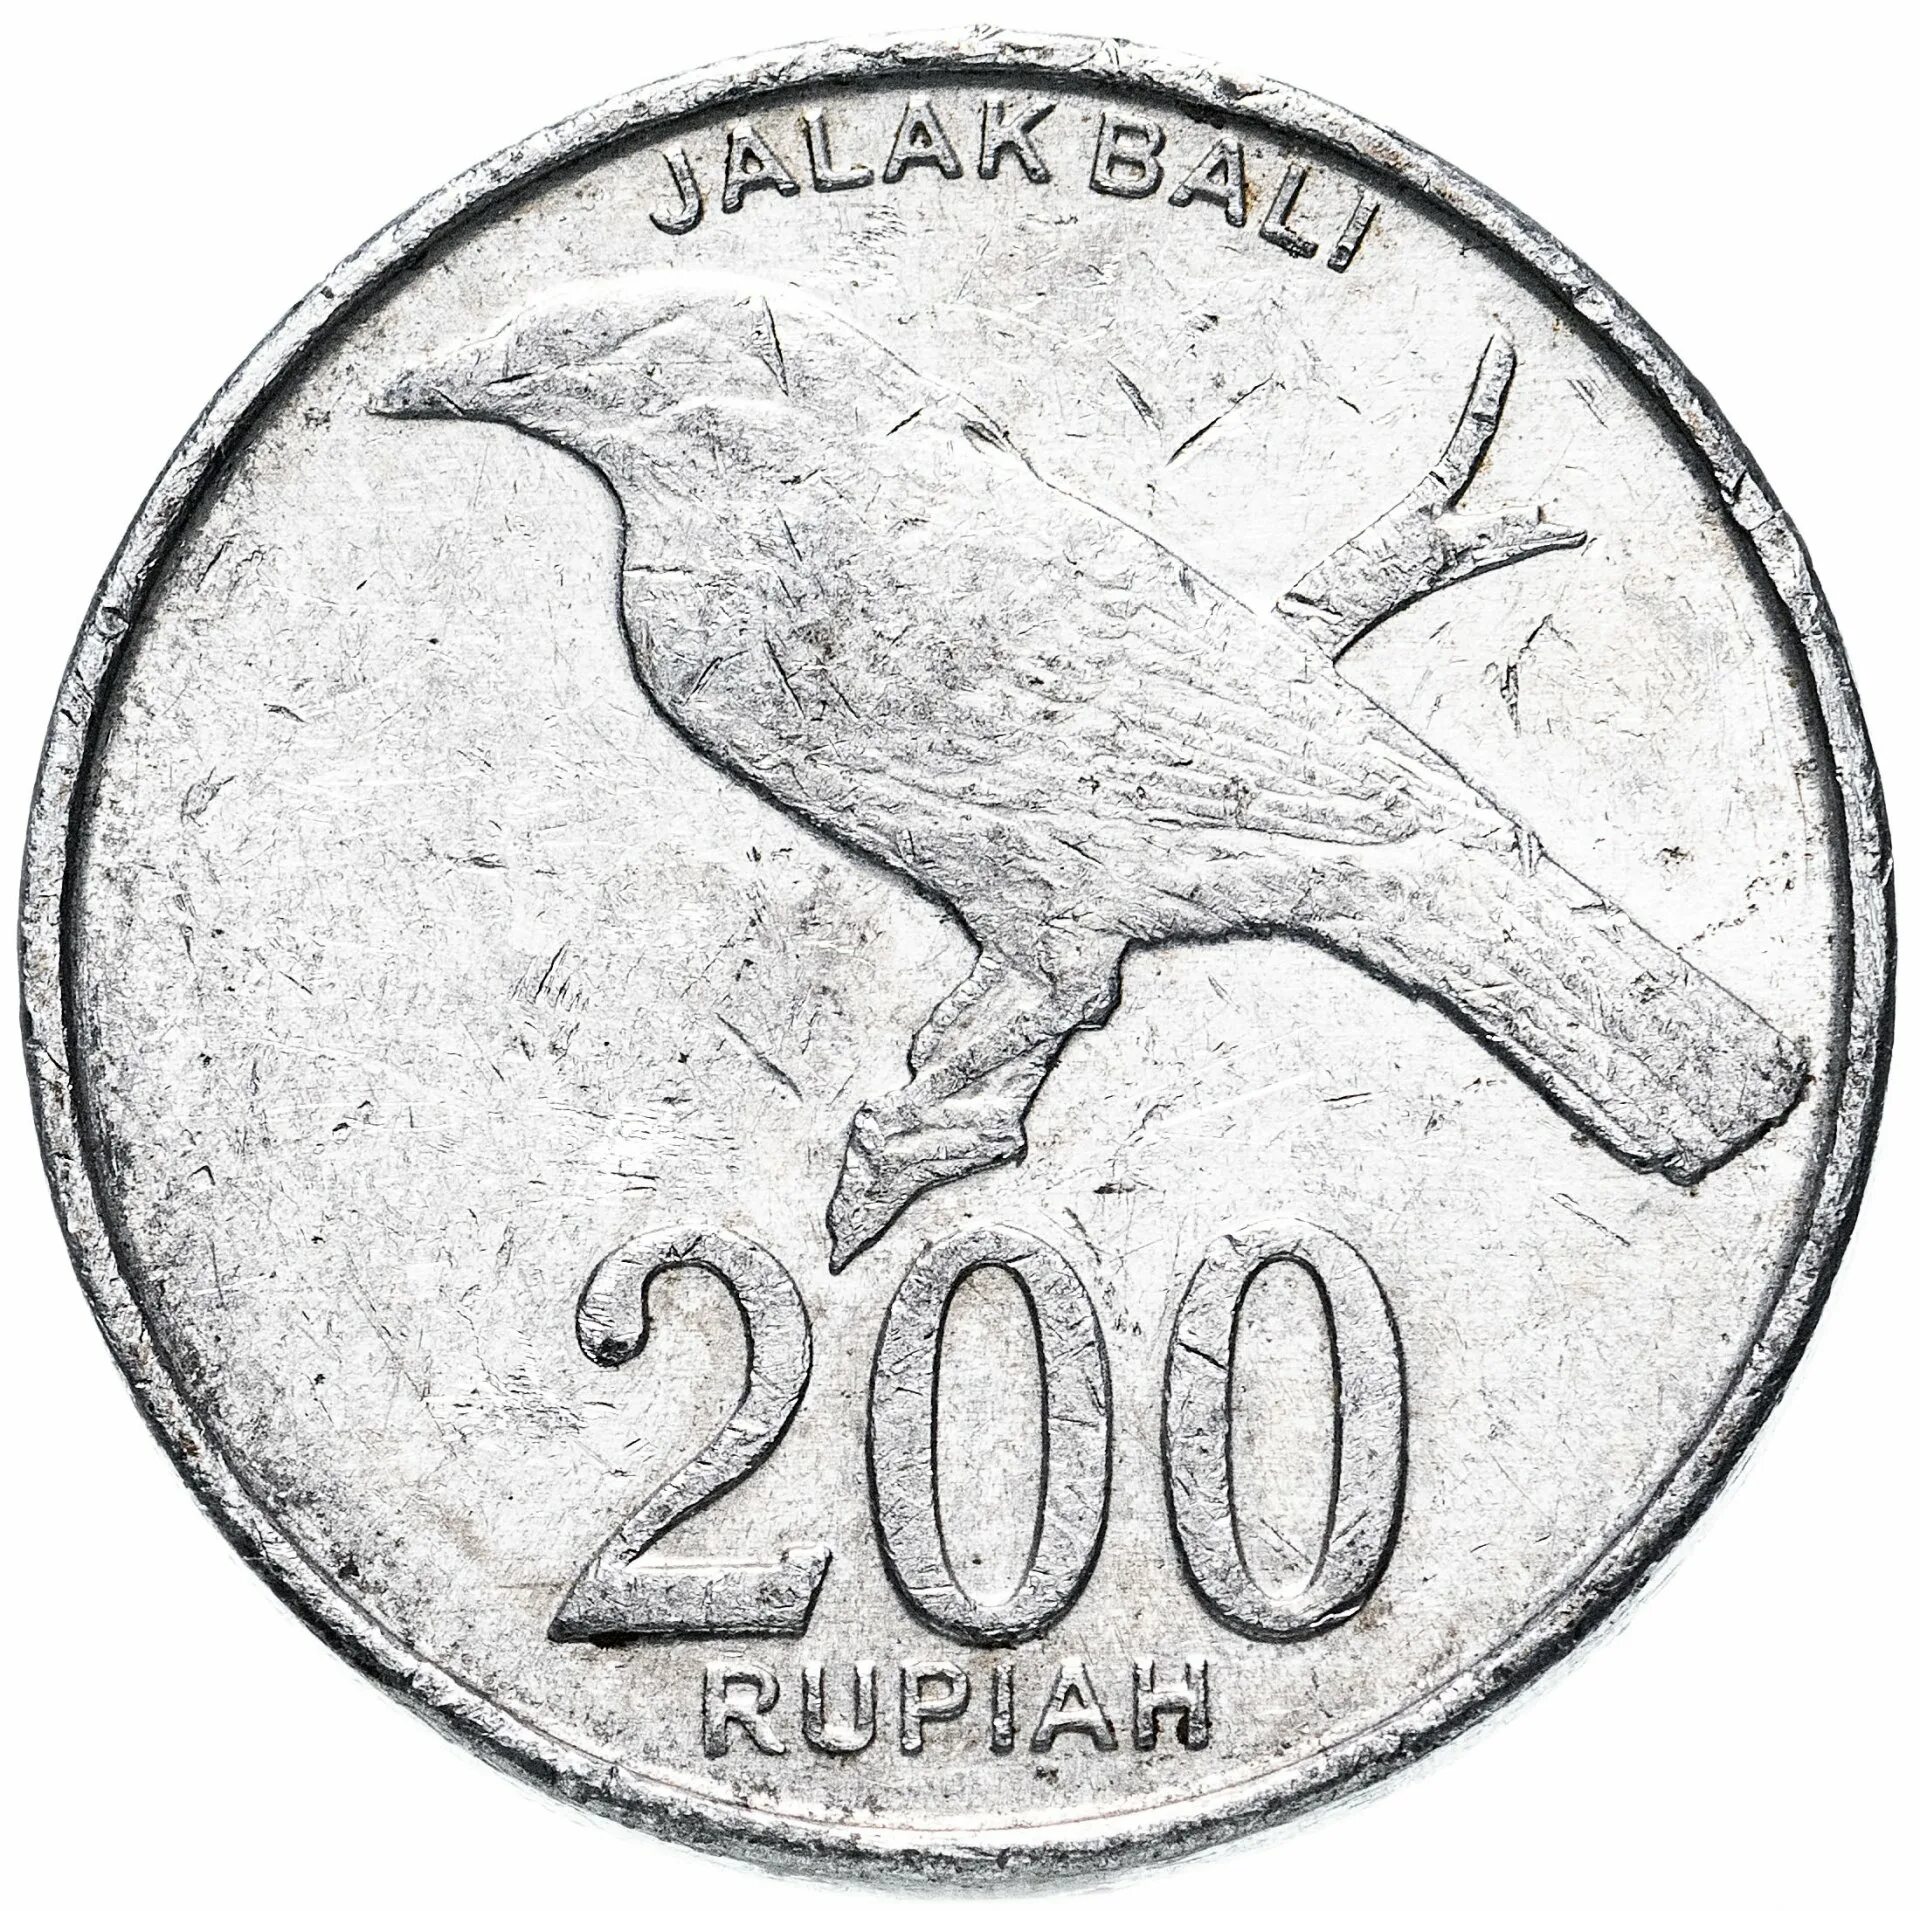 Индонезия 200 Rupiah 2003. Монета 500 Rupiah 2003 Bank Indonesia. 200 Рупий 2003 Индонезия. 200 Рупий монета.